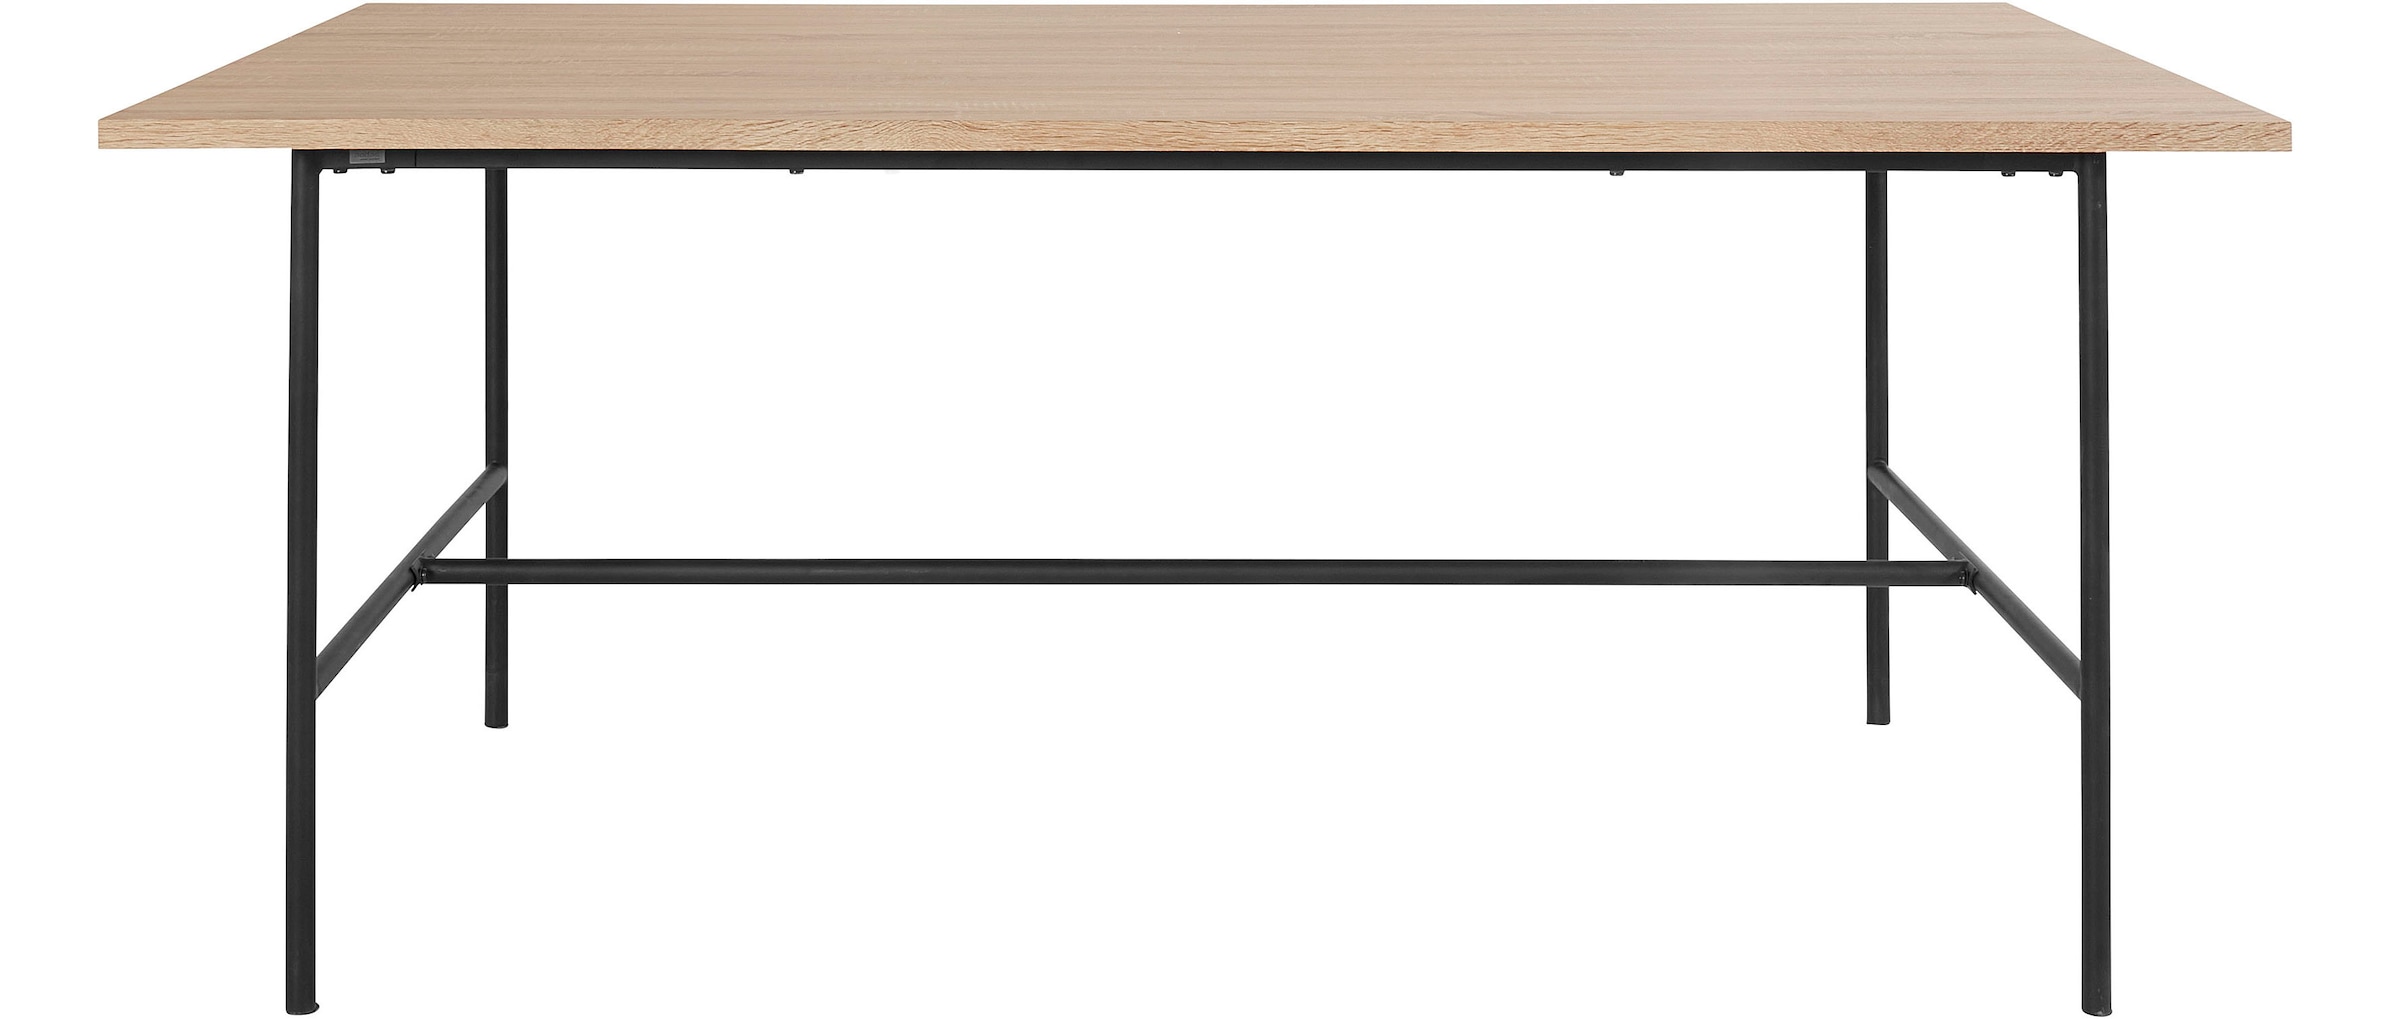 Leonique Esstisch »Adrien«, (1 St.), mit Tischplatte in einer pflegeleichten Holzoptik, Höhe 77 cm